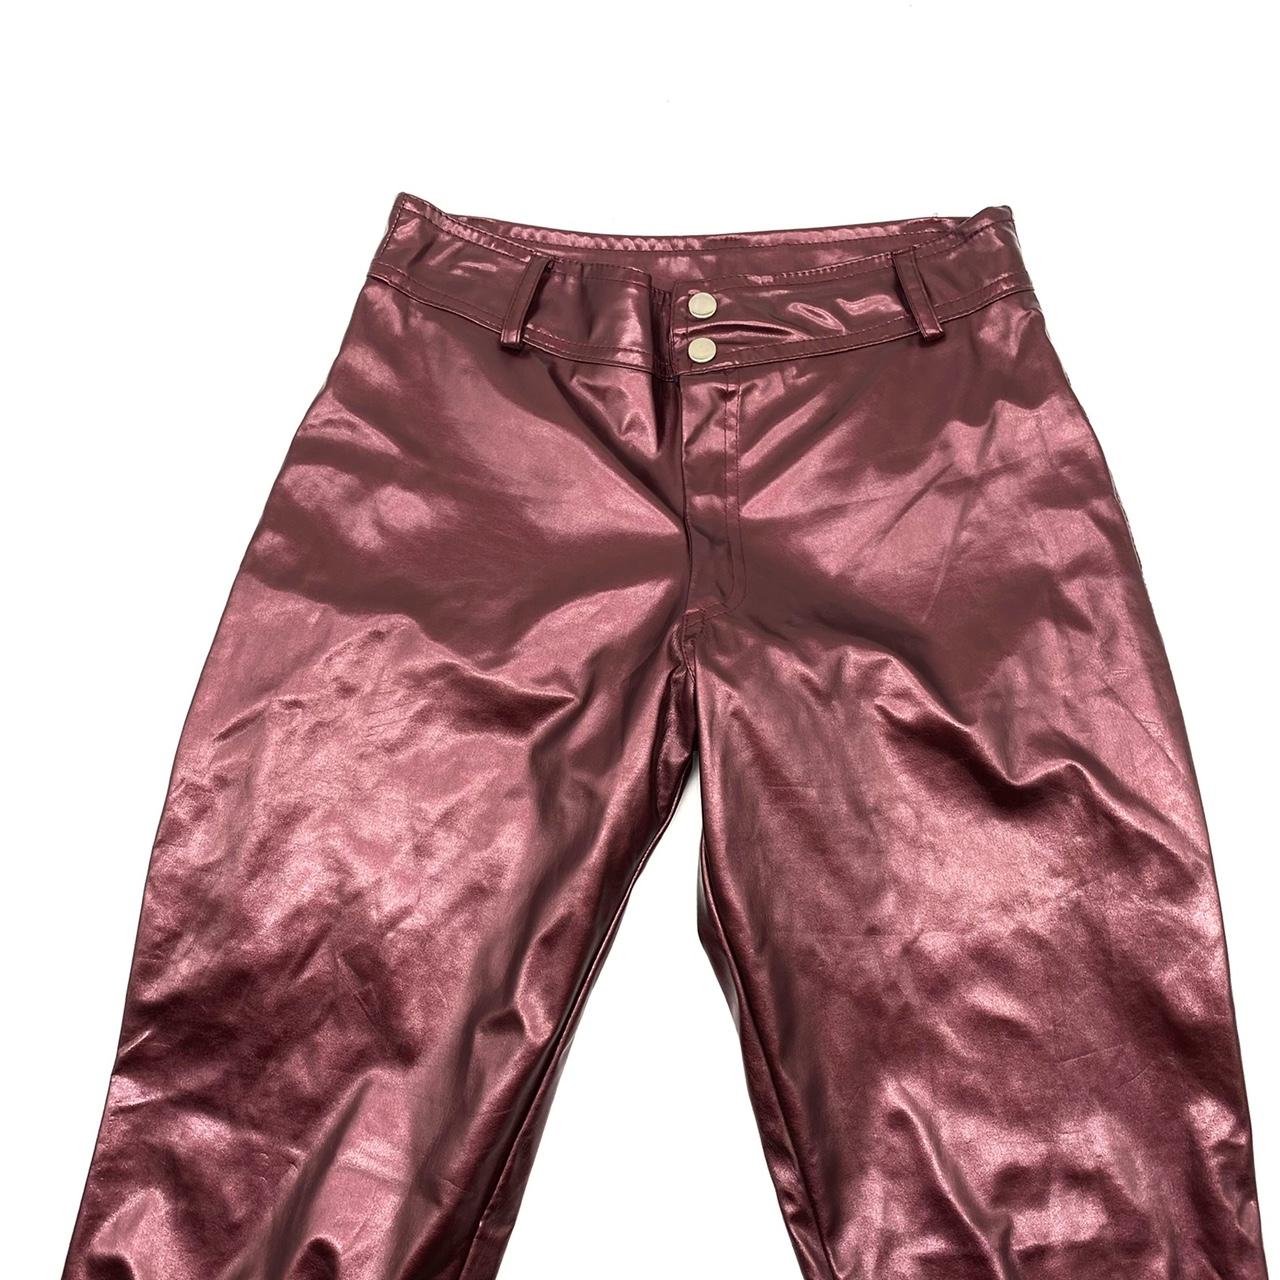 Vintage 1990s / y2k PVC goth maroon pants by super... - Depop